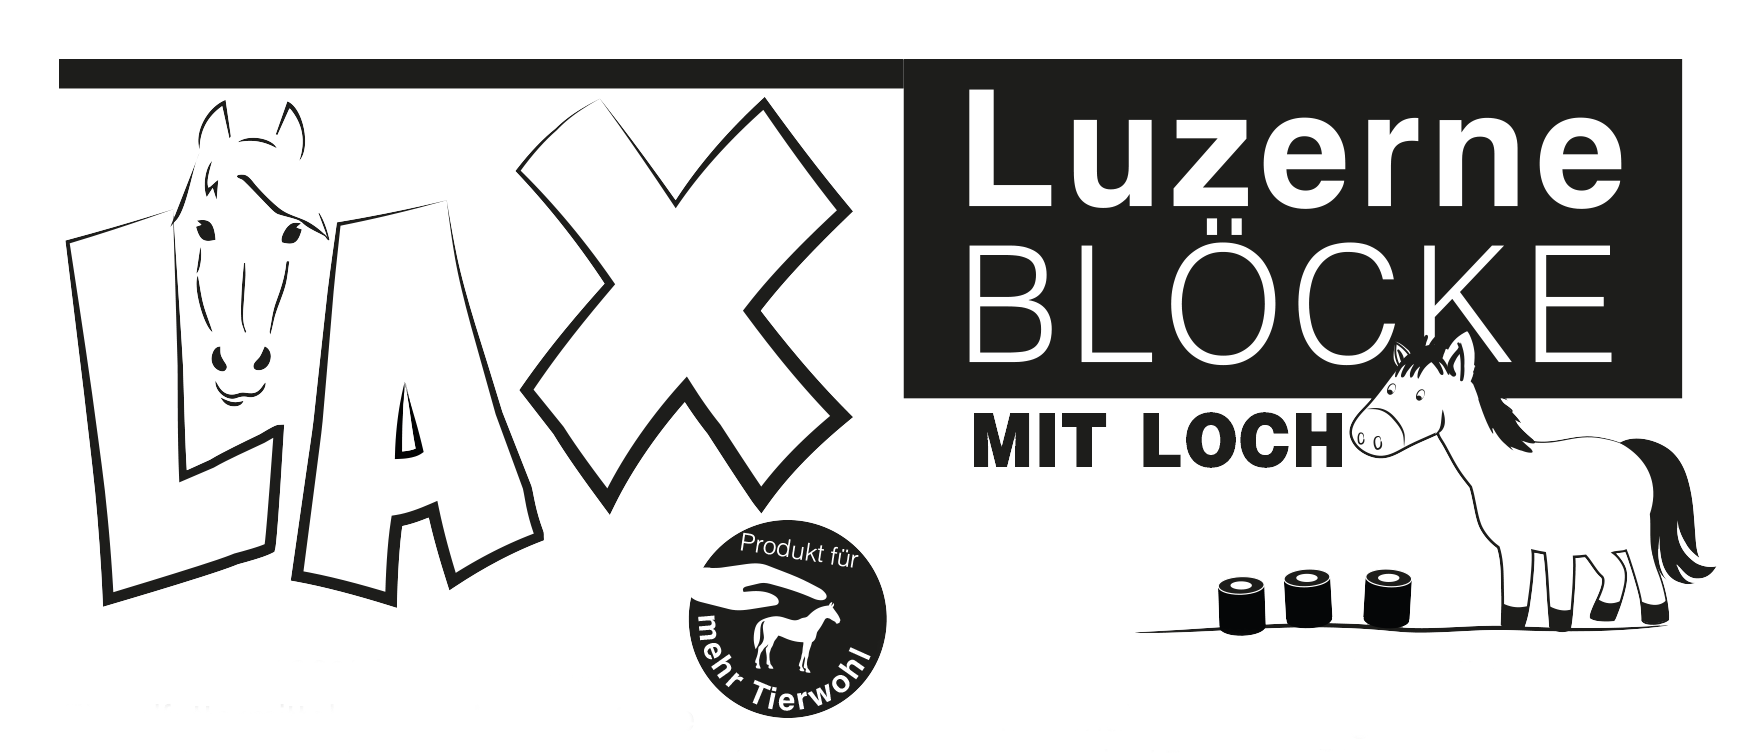 Lax Luzerne Blöcke mit Loch - 12,5 kg Pack